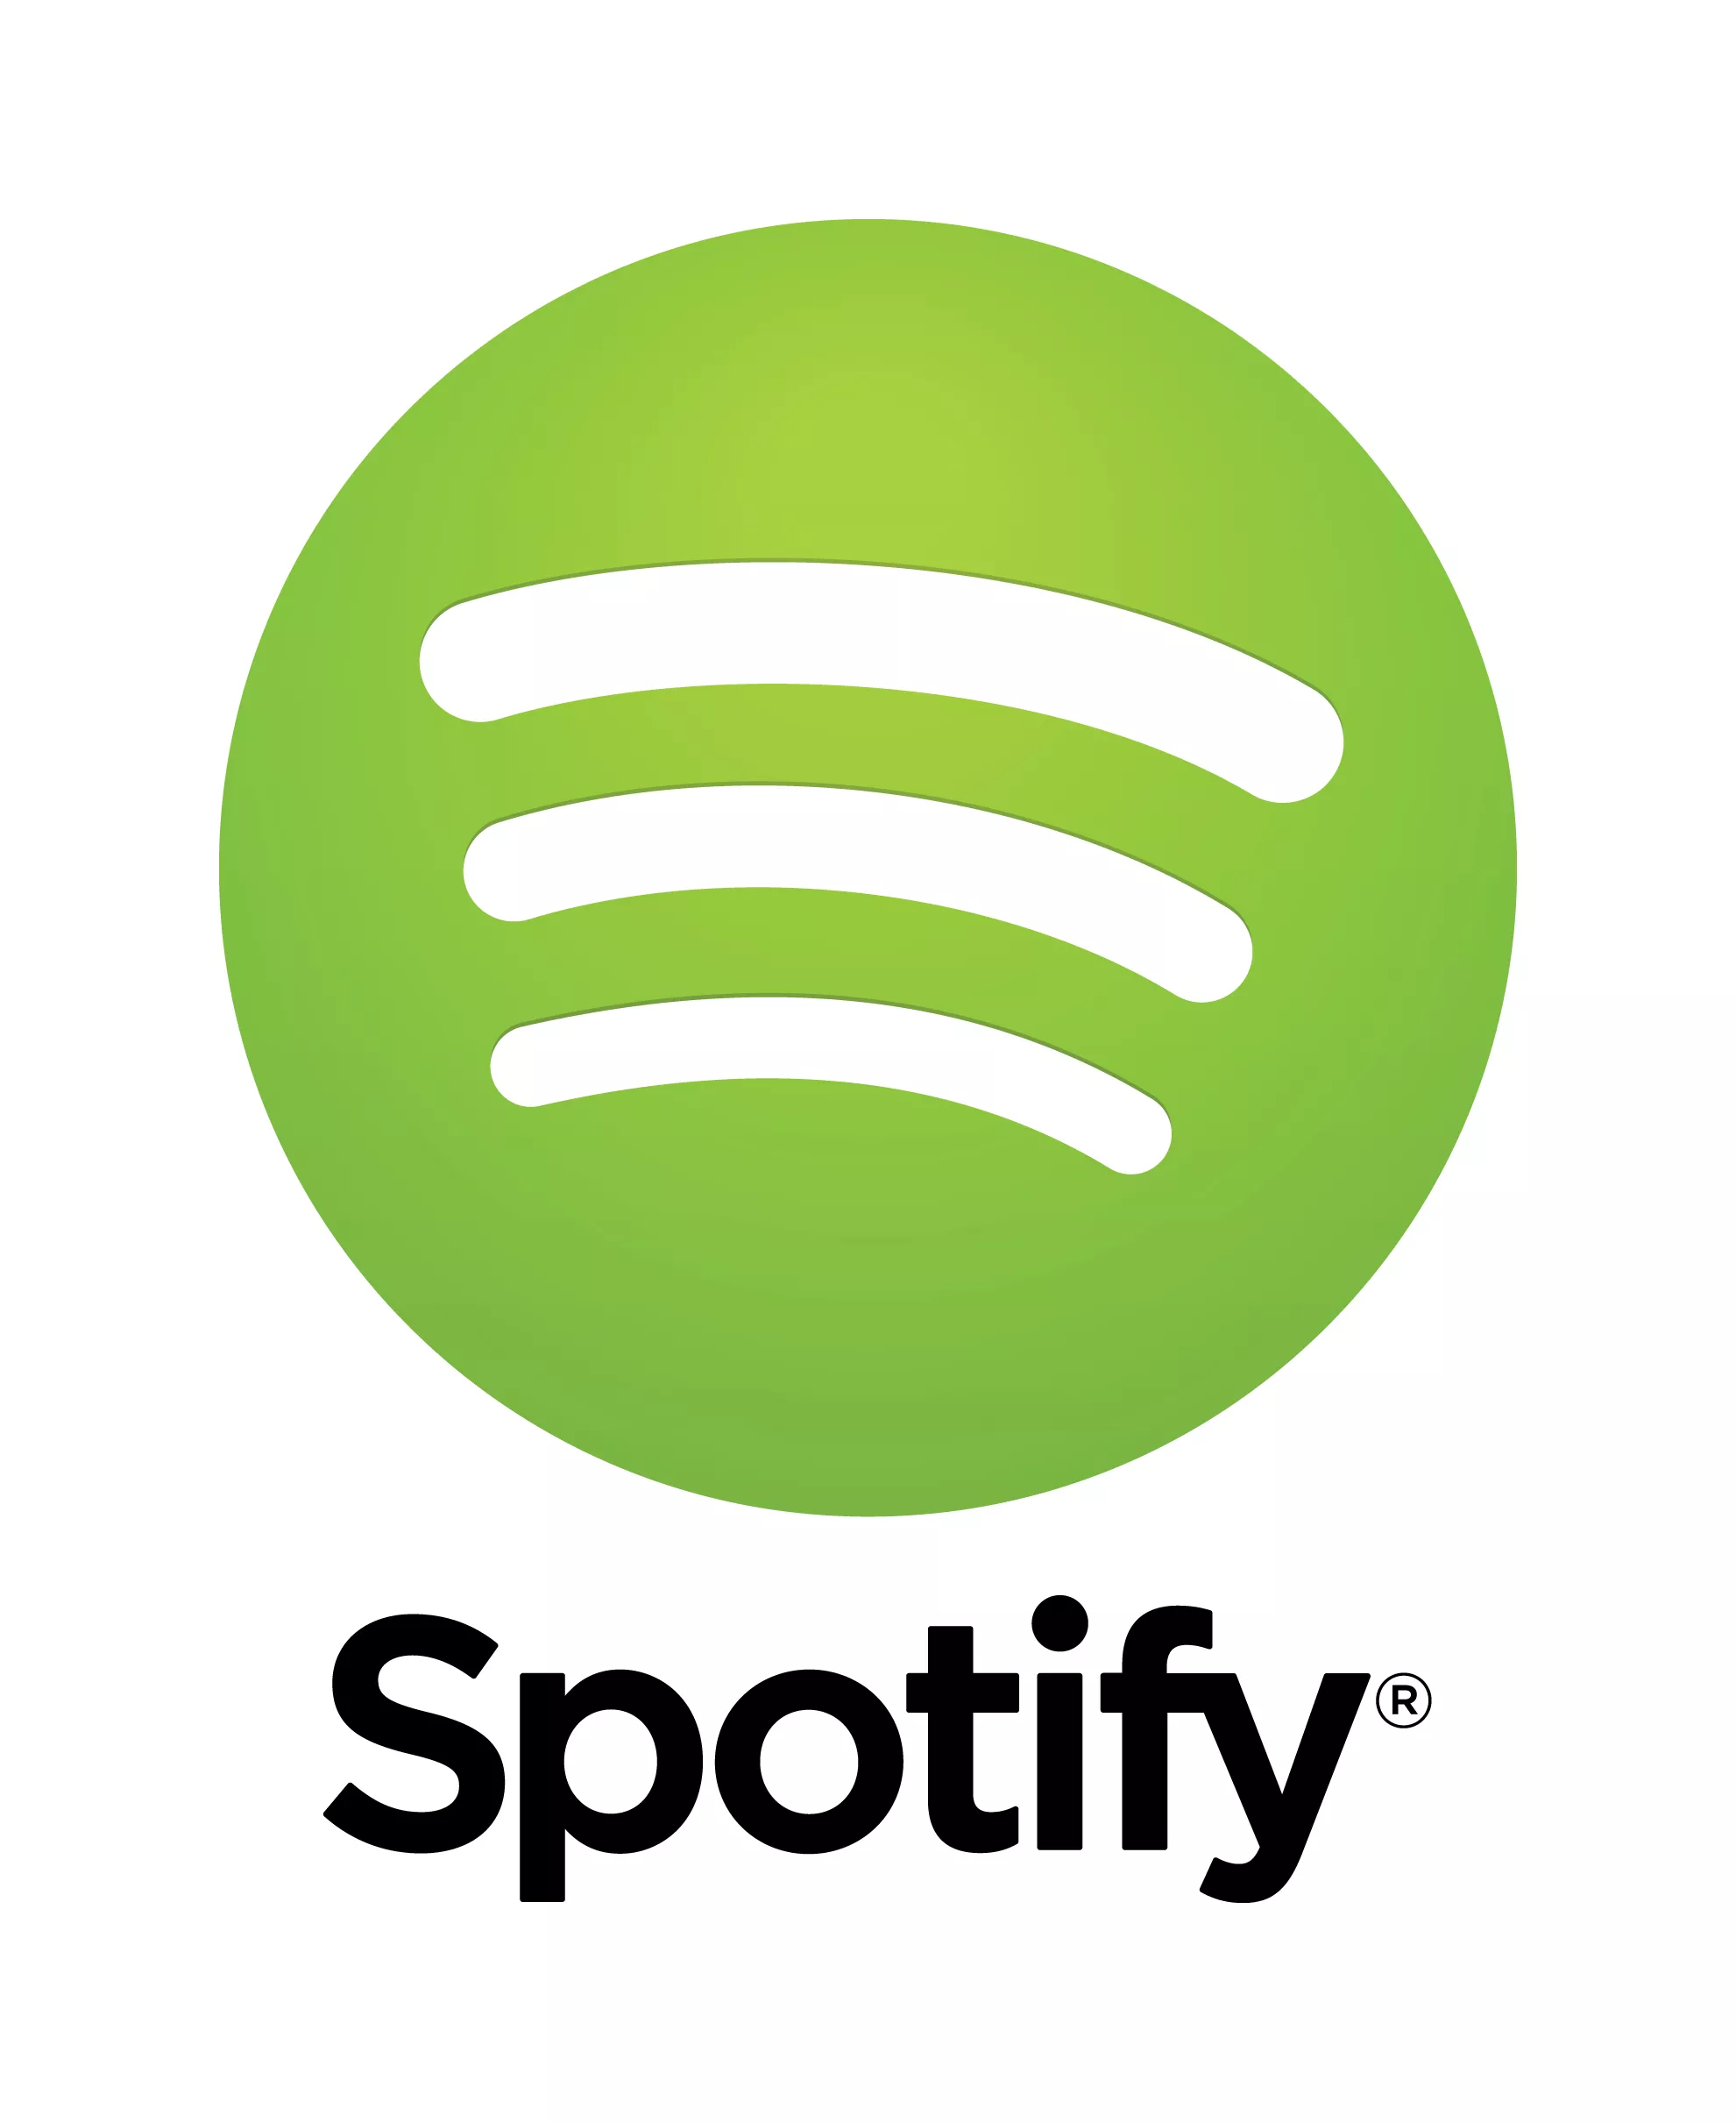 Spotify mer verdt enn hele den amerikanske musikkindustrien